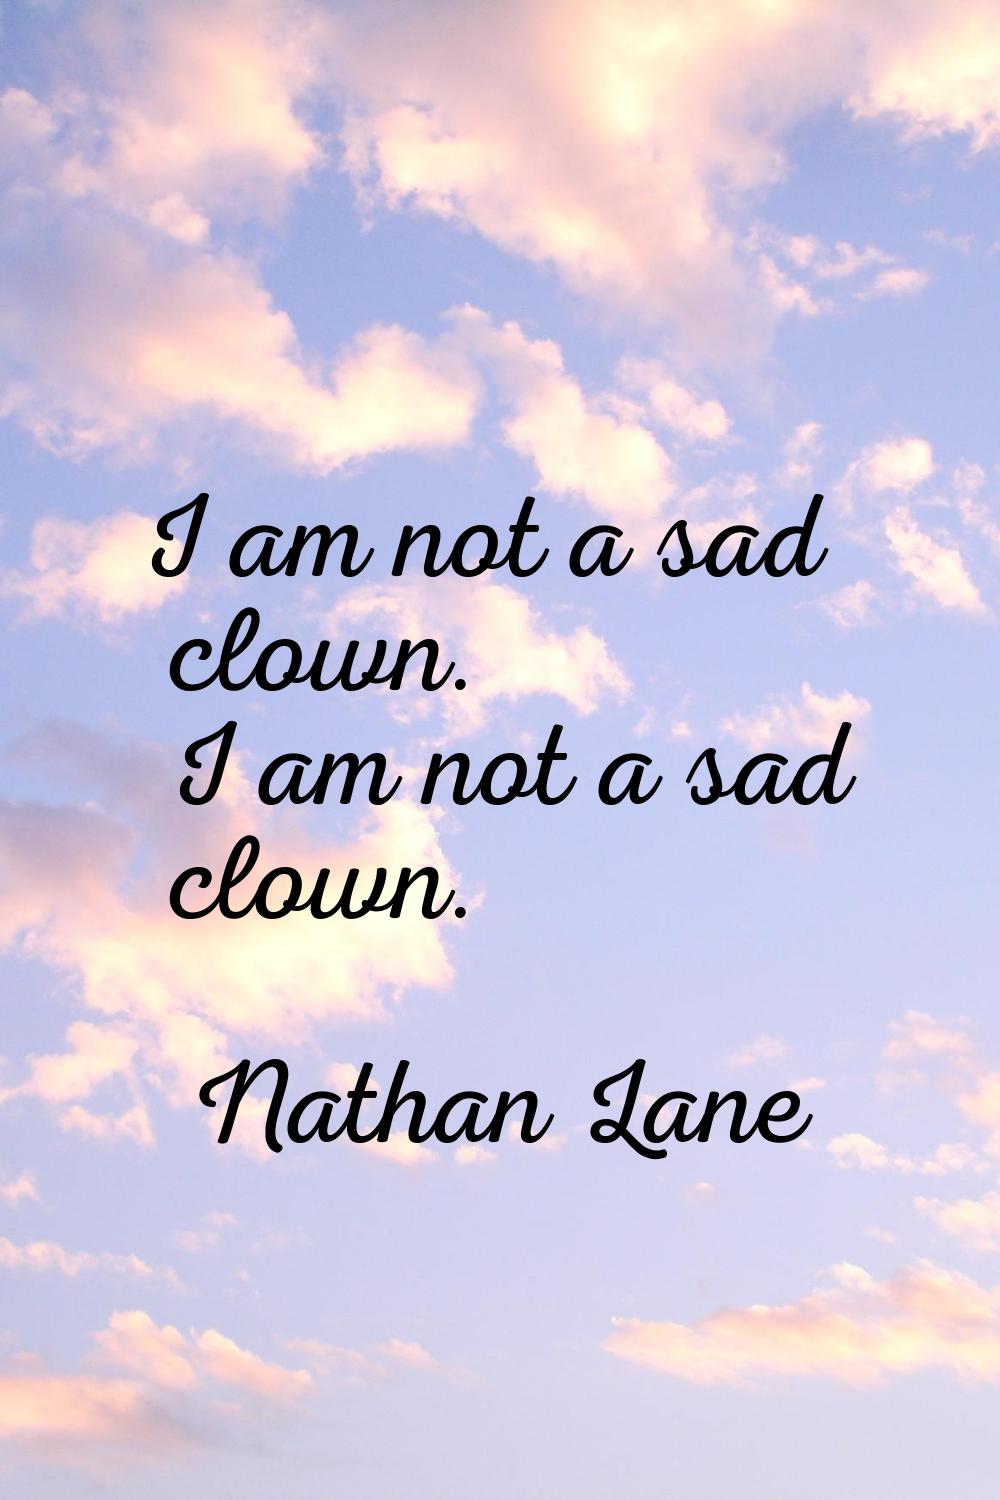 I am not a sad clown. I am not a sad clown.